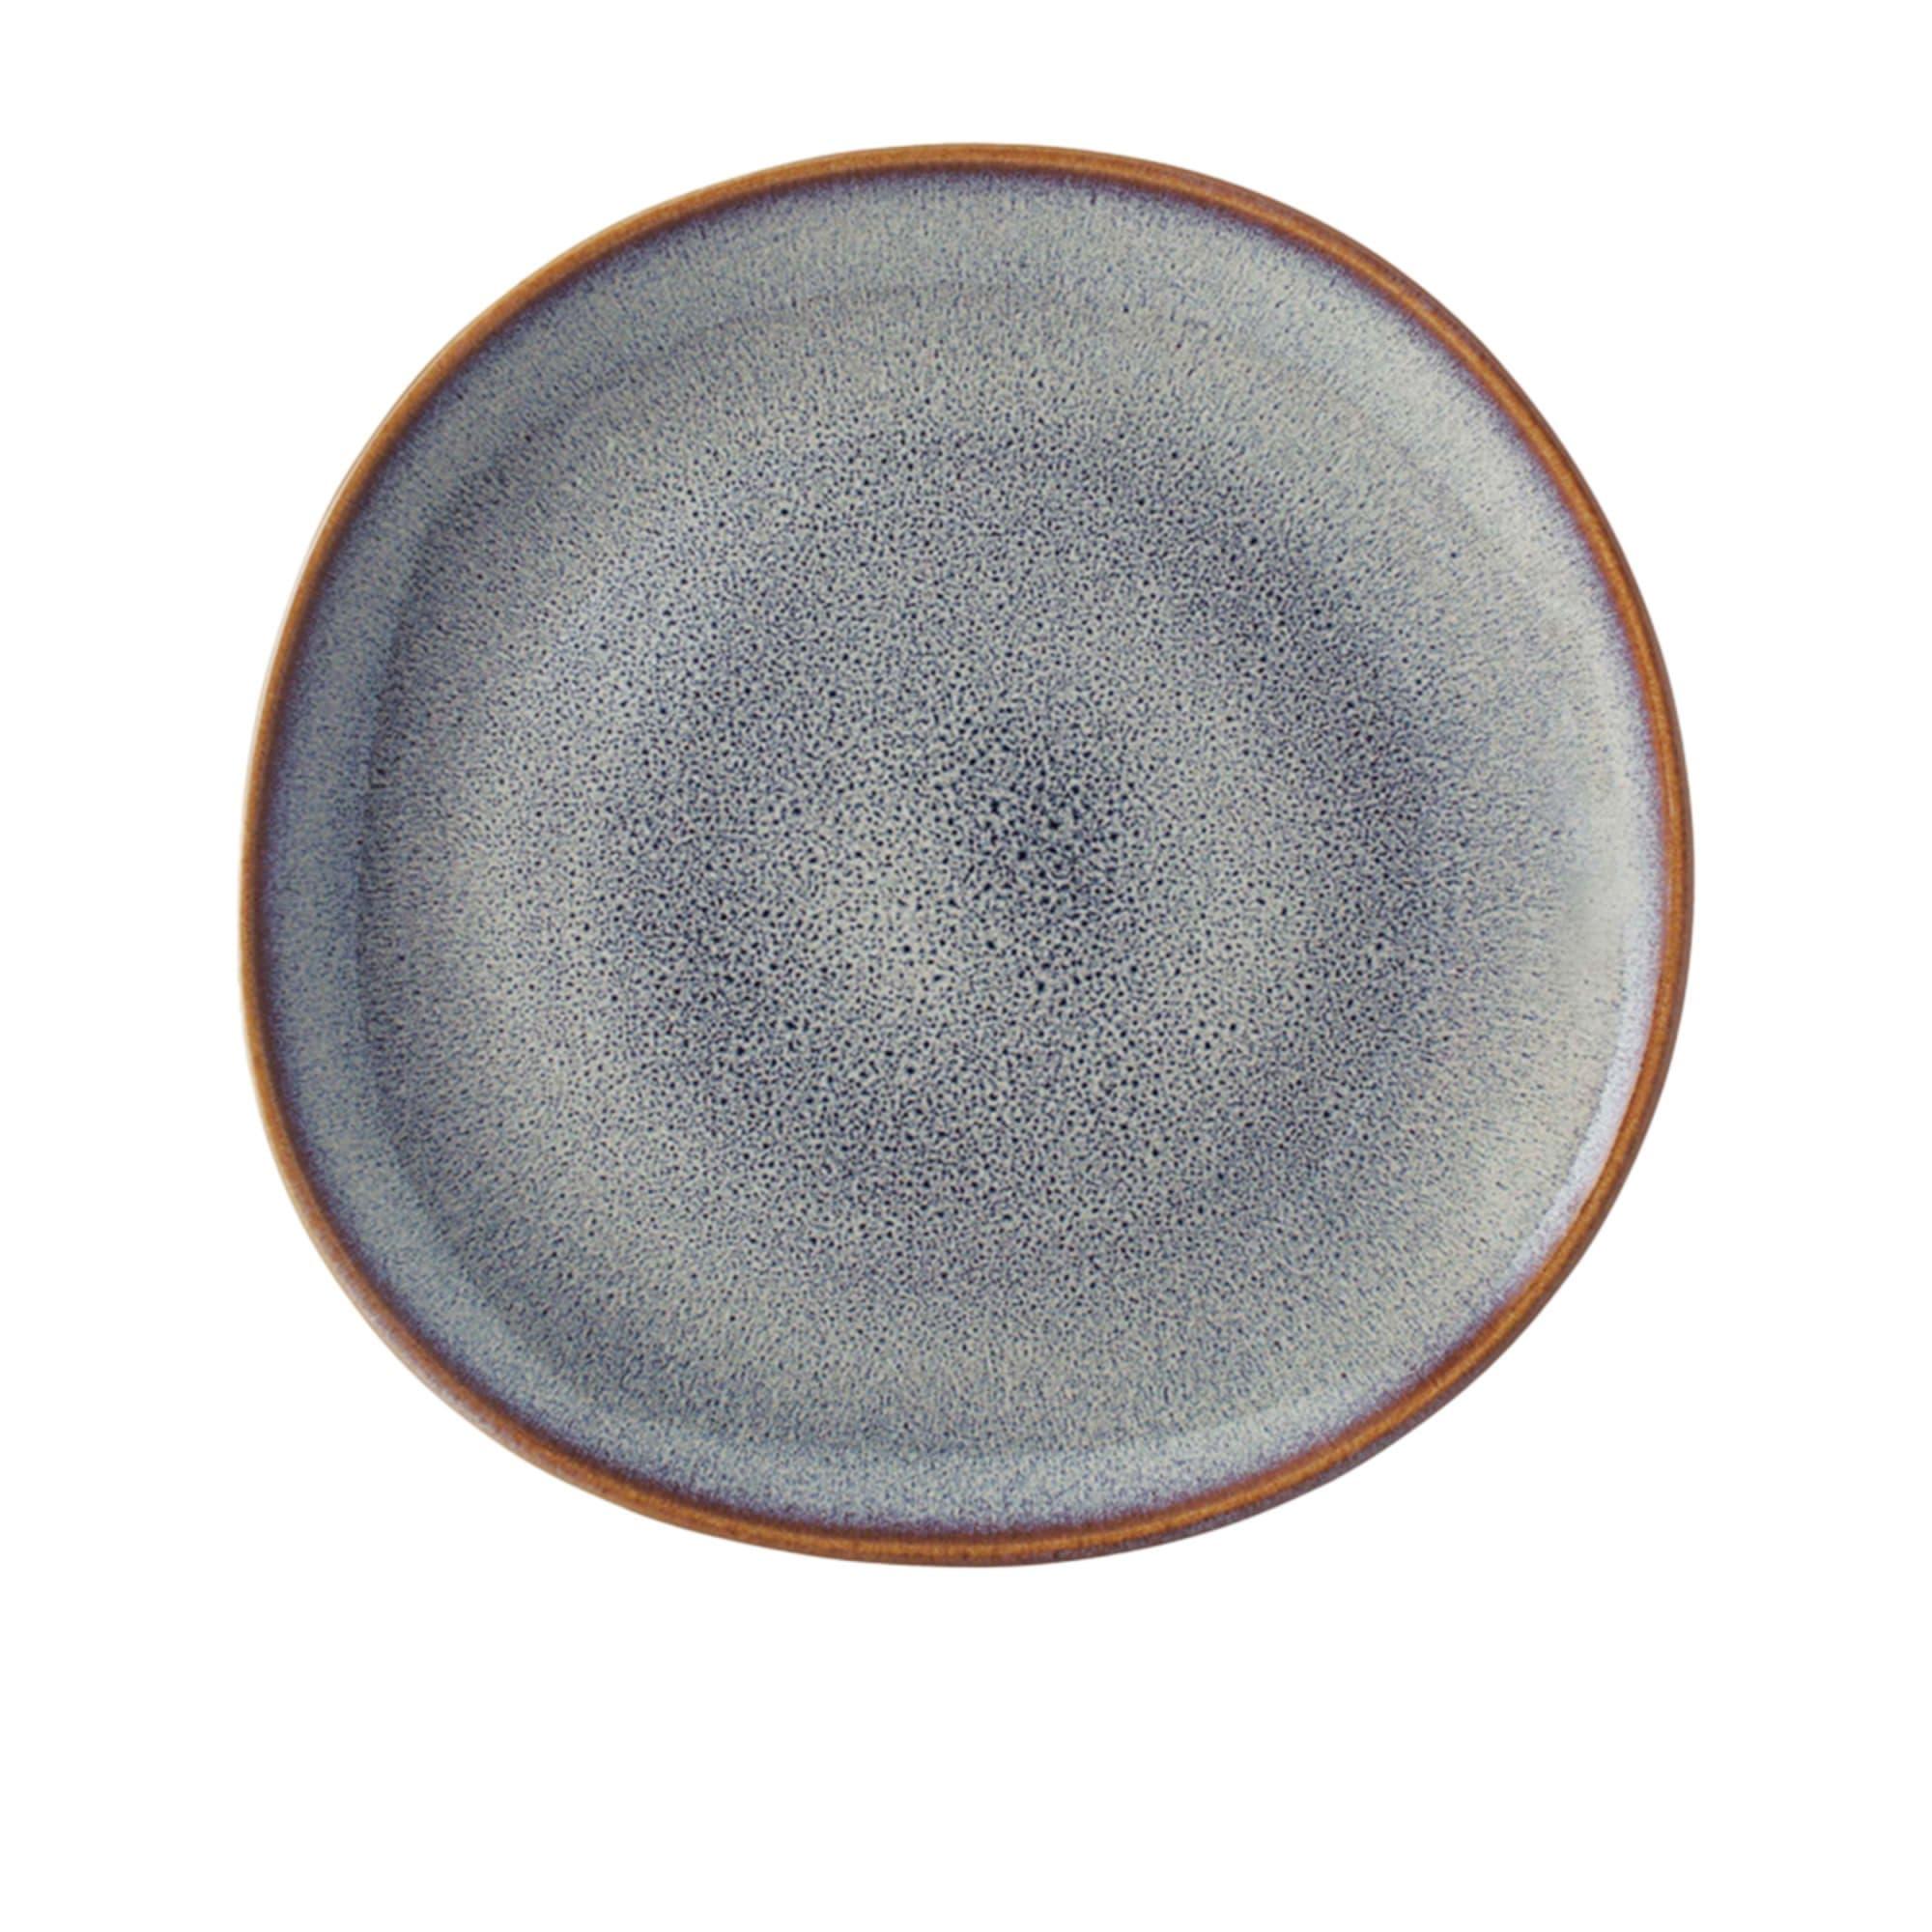 Villeroy & Boch Lave Beige Breakfast Plate 23cm Image 1